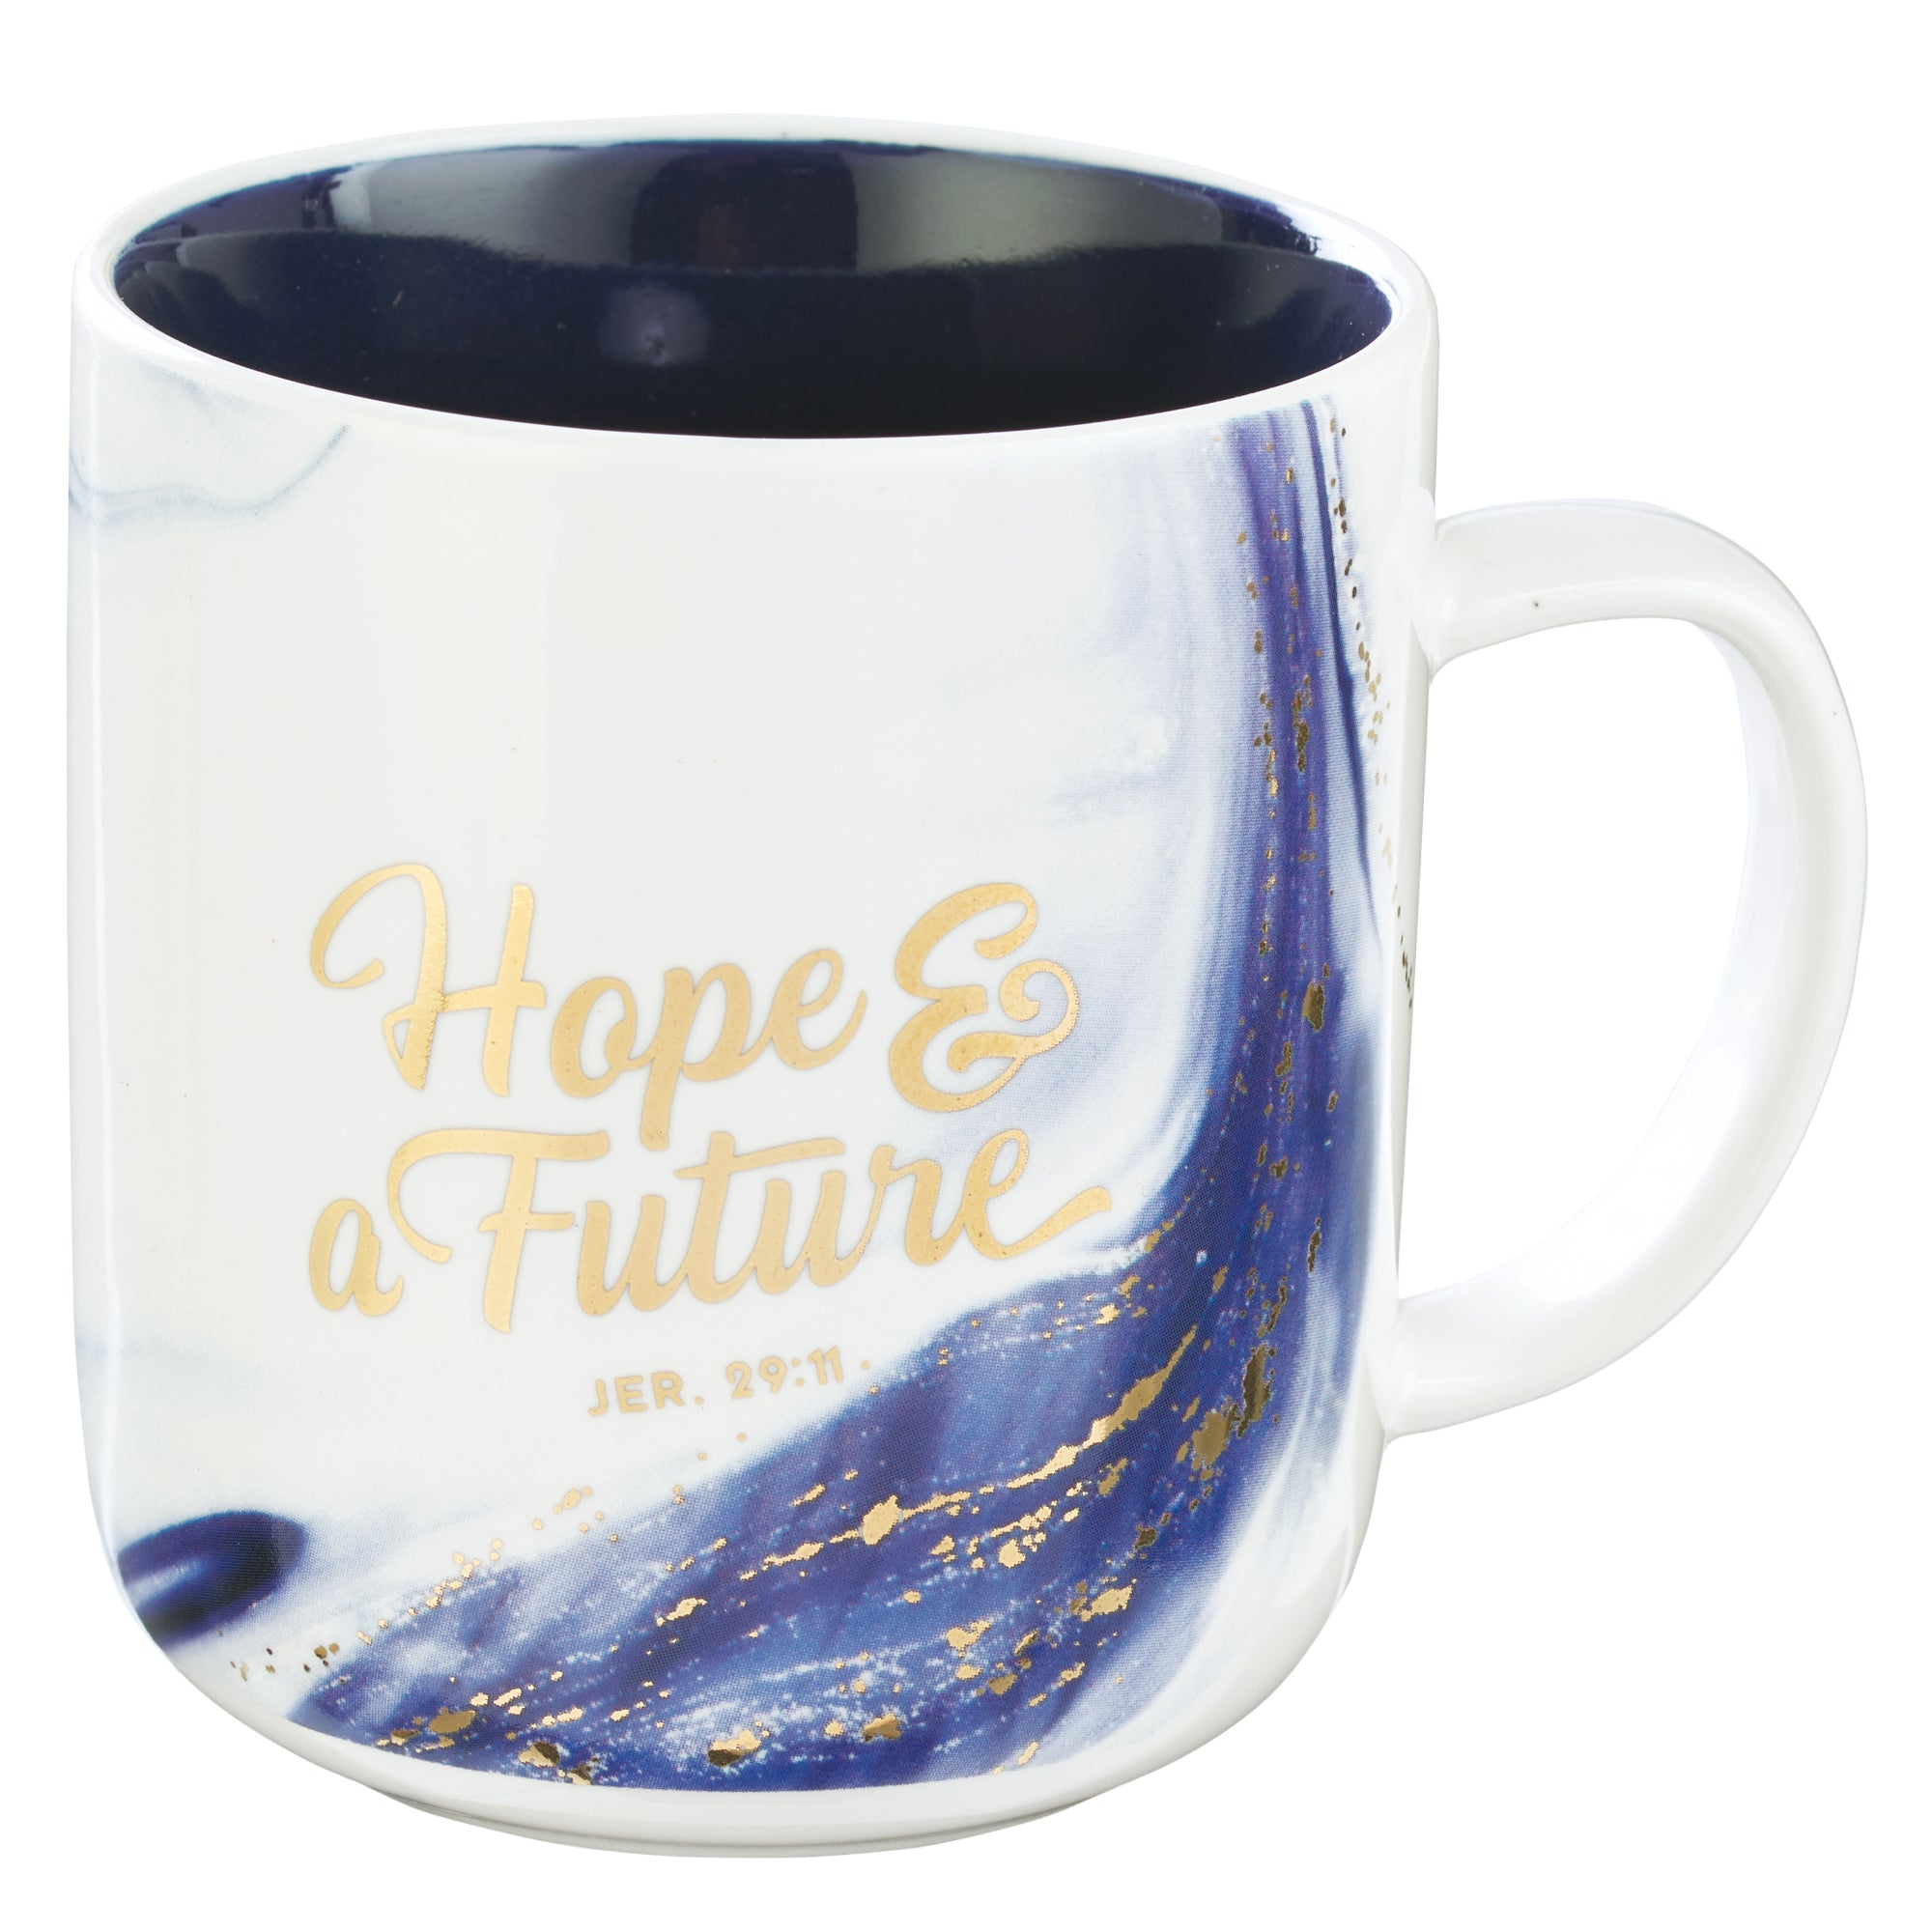 Blue Hope & a Future Coffee Mug - Jeremiah 29:11